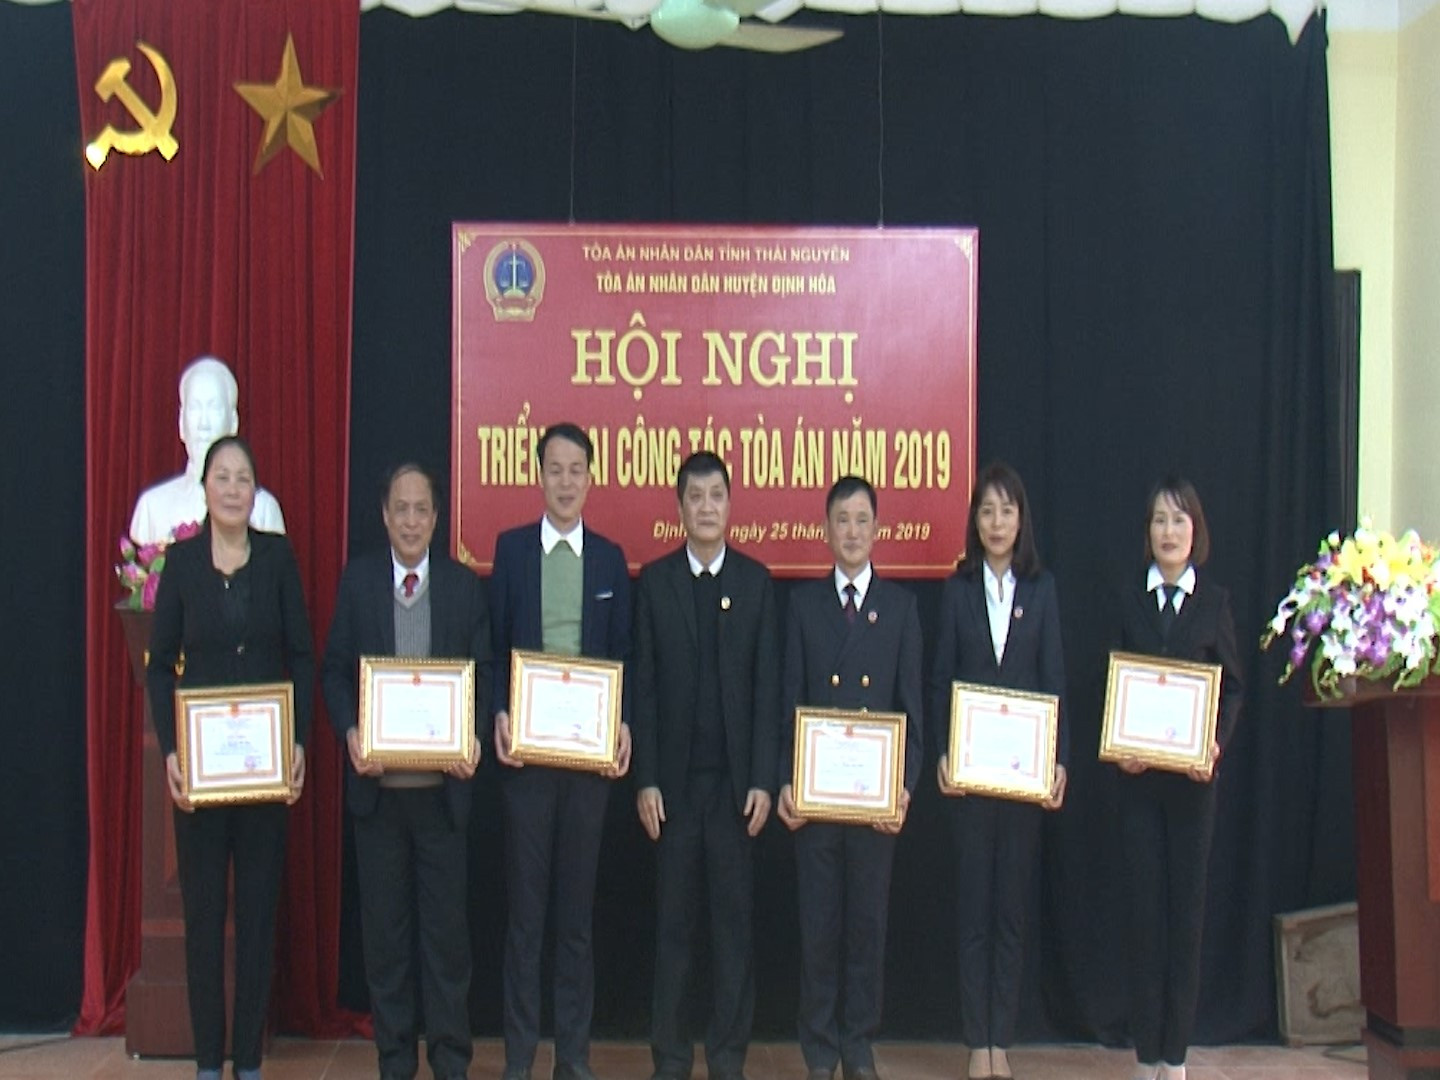 TAND huyện Định Hóa, tỉnh Thái Nguyên: Học Bác ở thái độ phục vụ nhân dân